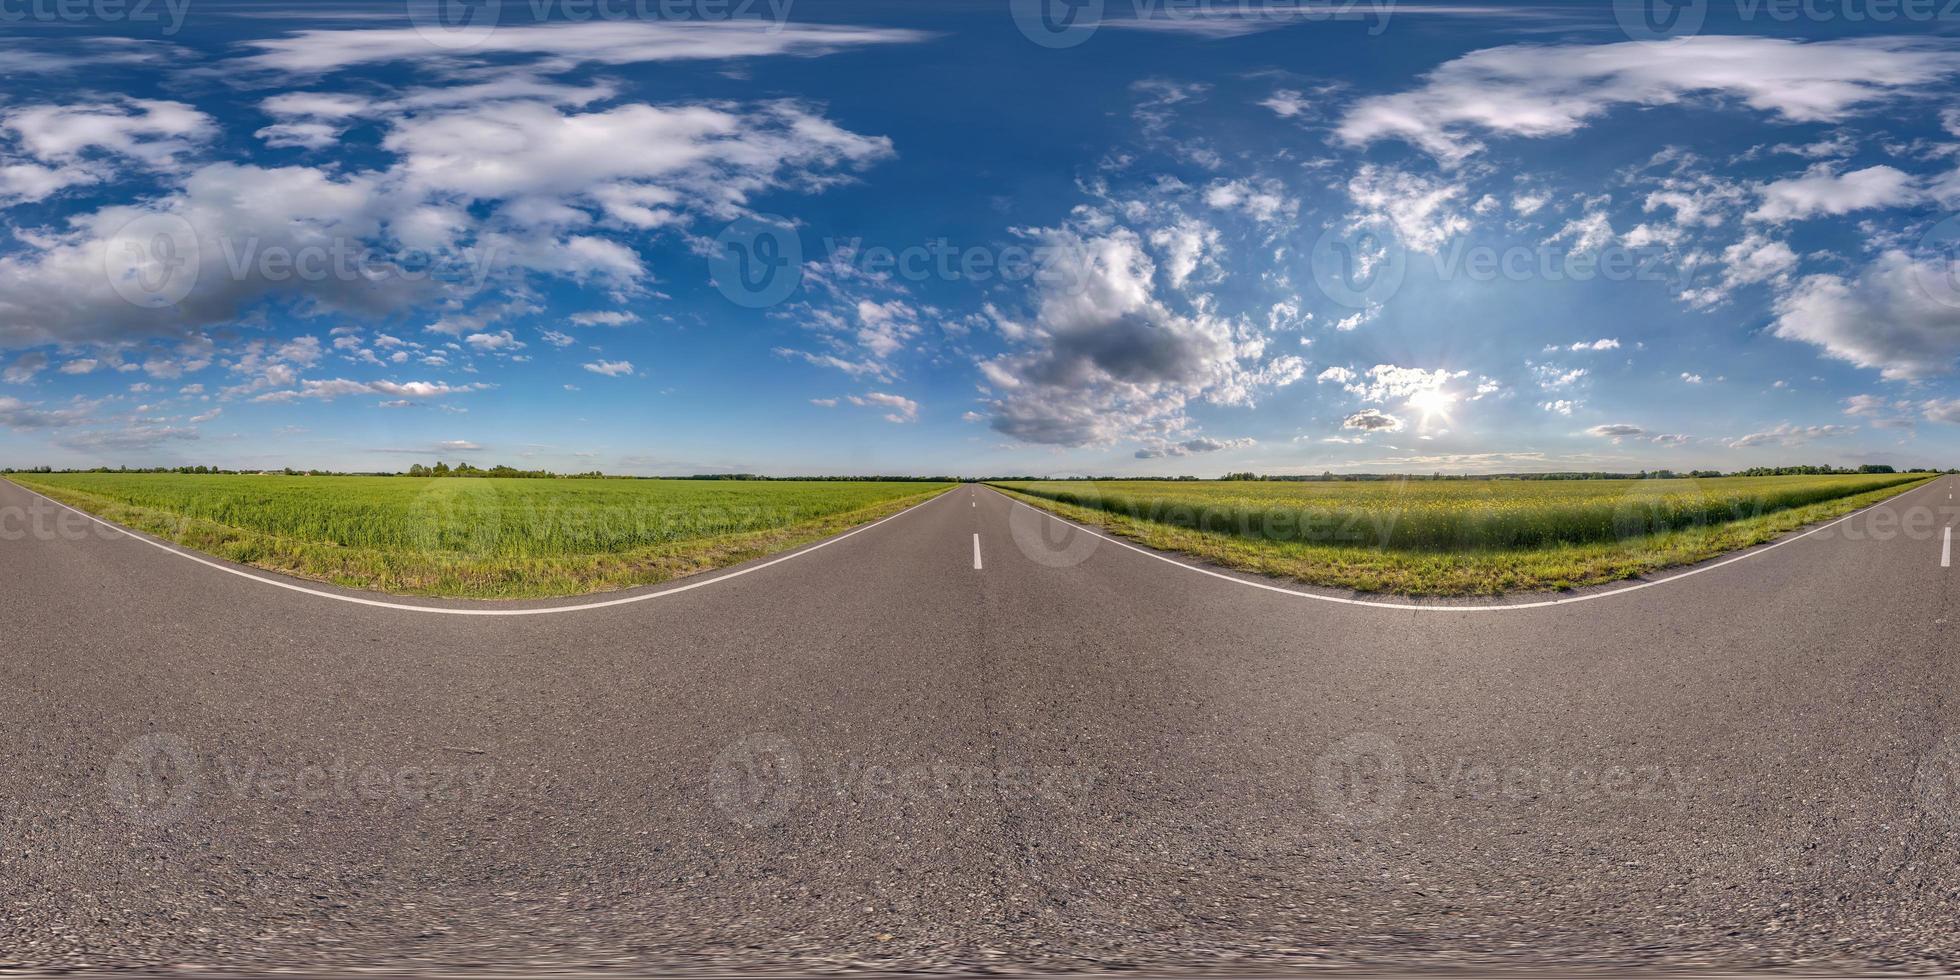 panorama hdri harmonieux et sphérique complet vue d'angle à 360 degrés sur une route goudronnée sans circulation parmi les champs avec un ciel bleu clair et de beaux nuages en projection équirectangulaire, contenu vr ar photo